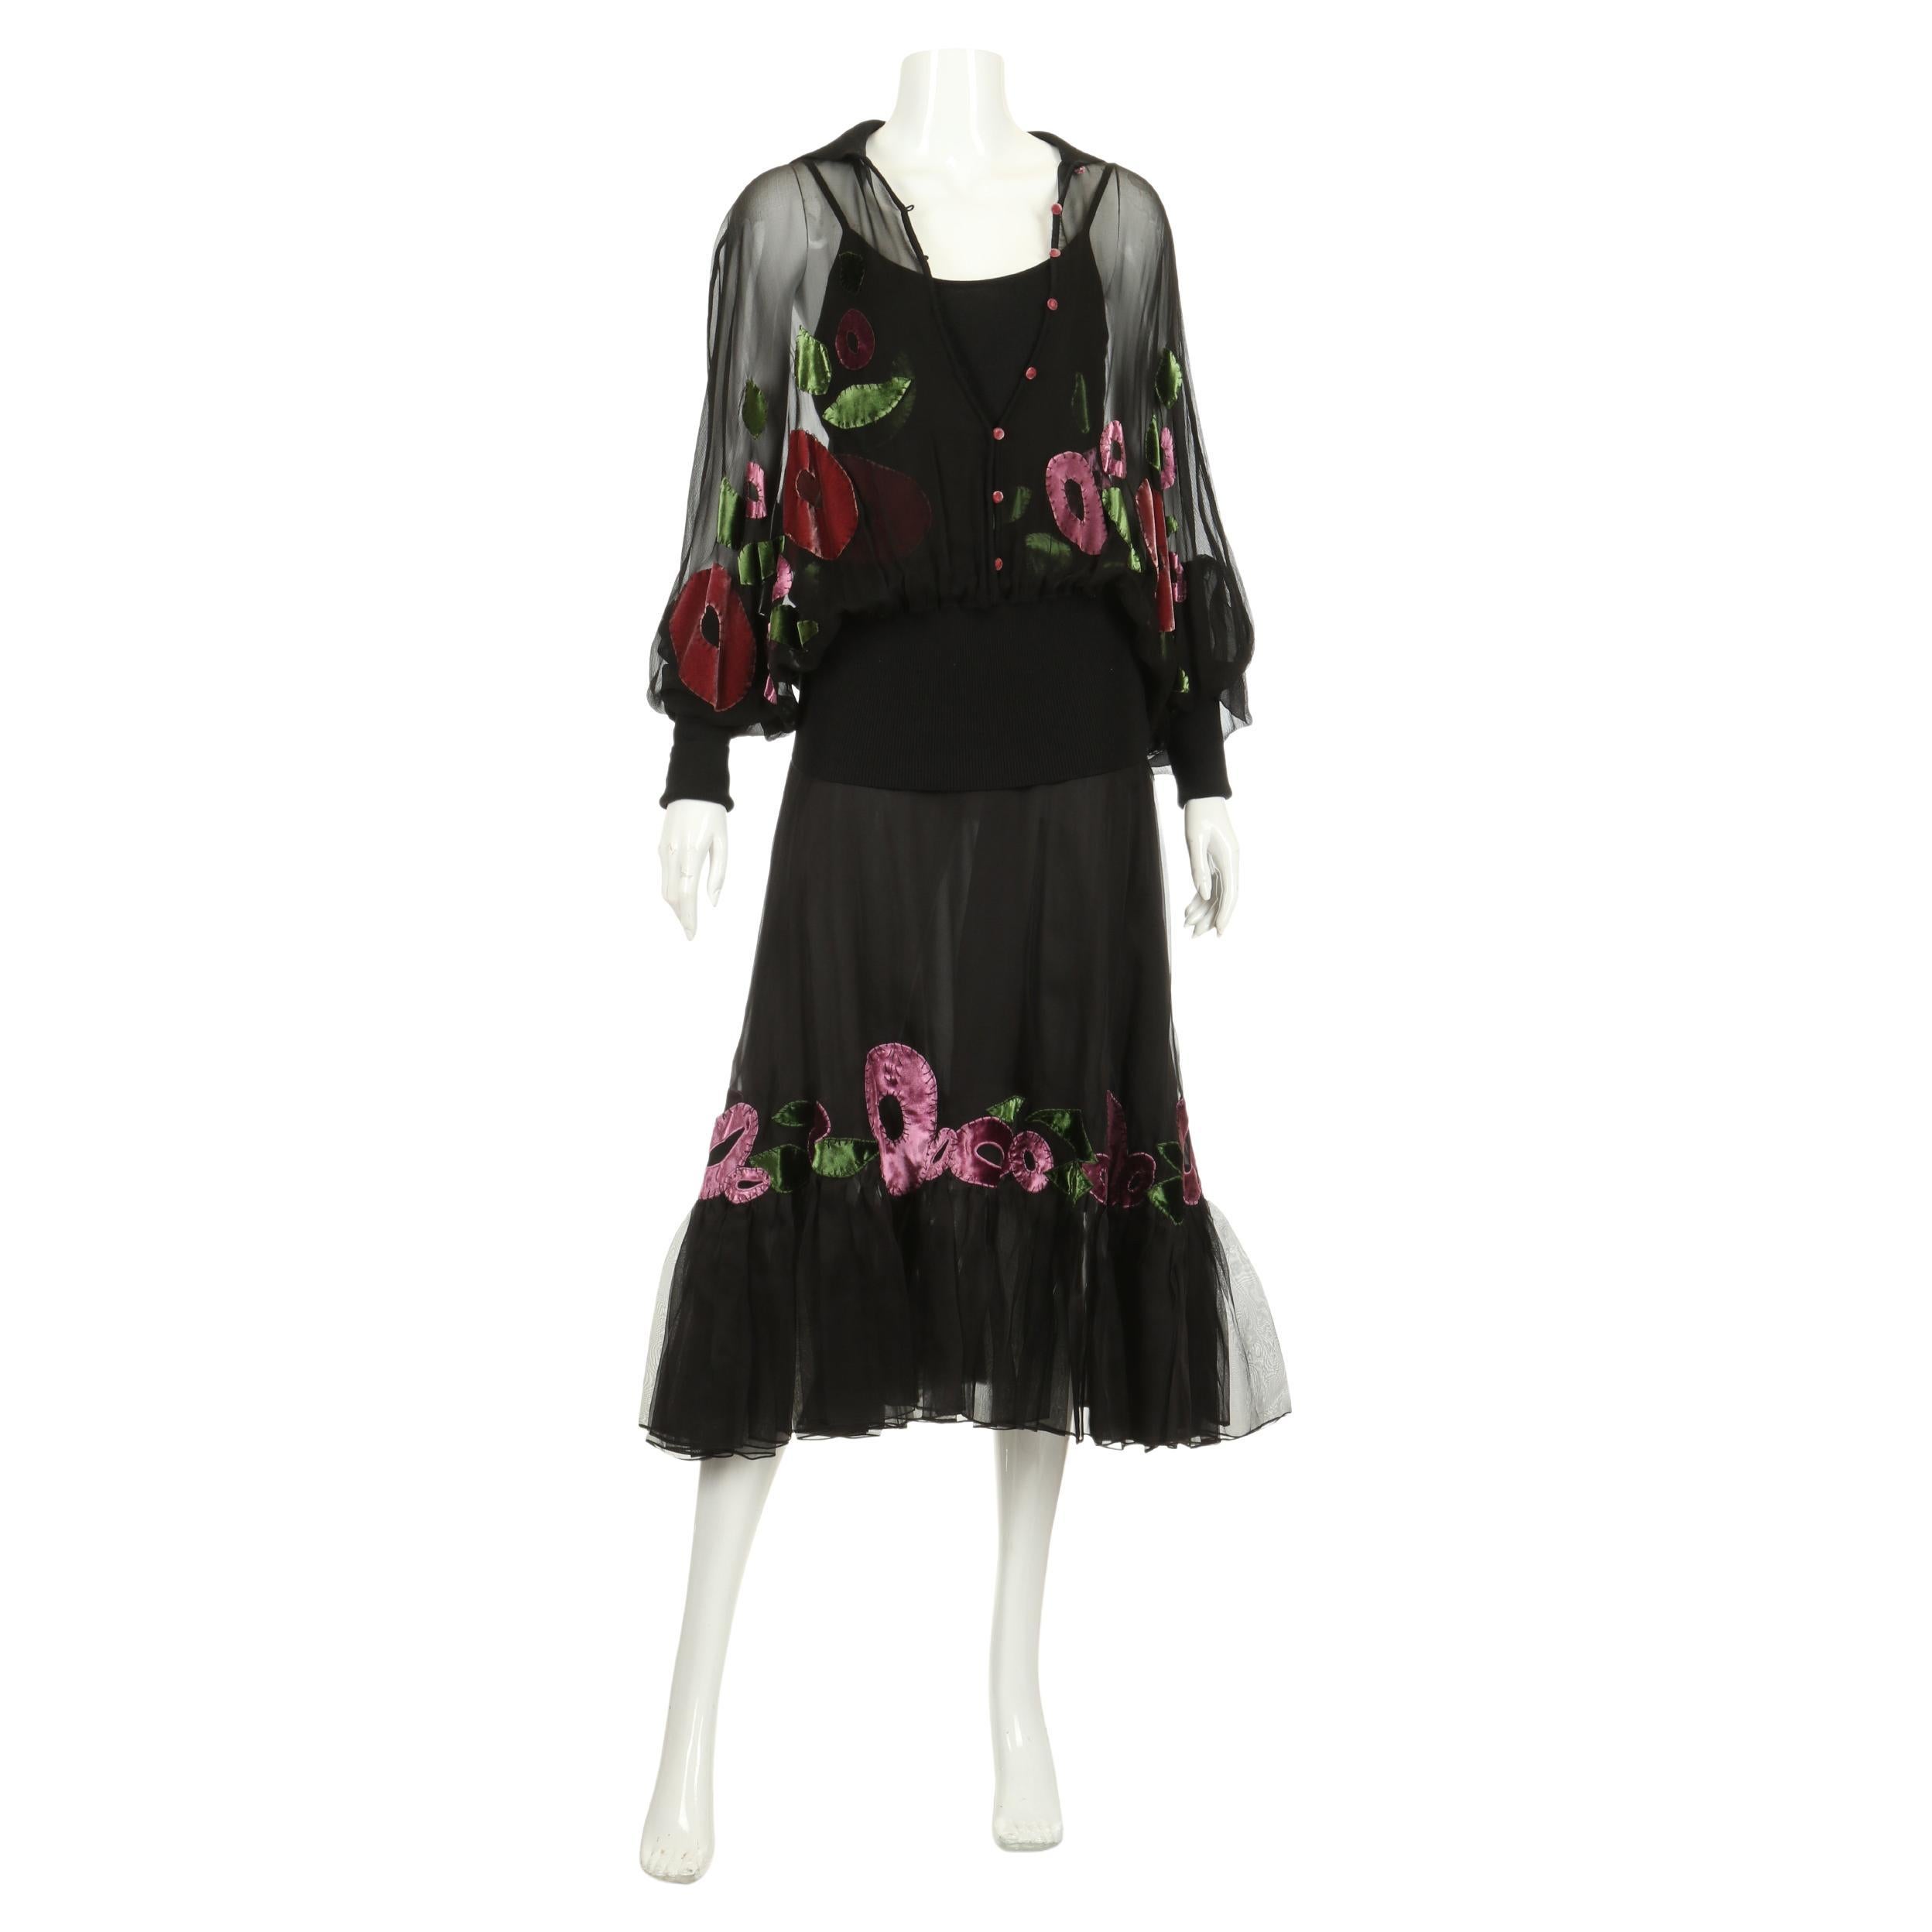 2002 Christian Dior by John Galliano Ensemble 3 pièces - une jupe, une camisole et un chemisier - avec des applications florales abstraites en velours de soie assorties sur chaque pièce : une jupe à volants en organza de soie noire, une jupe à